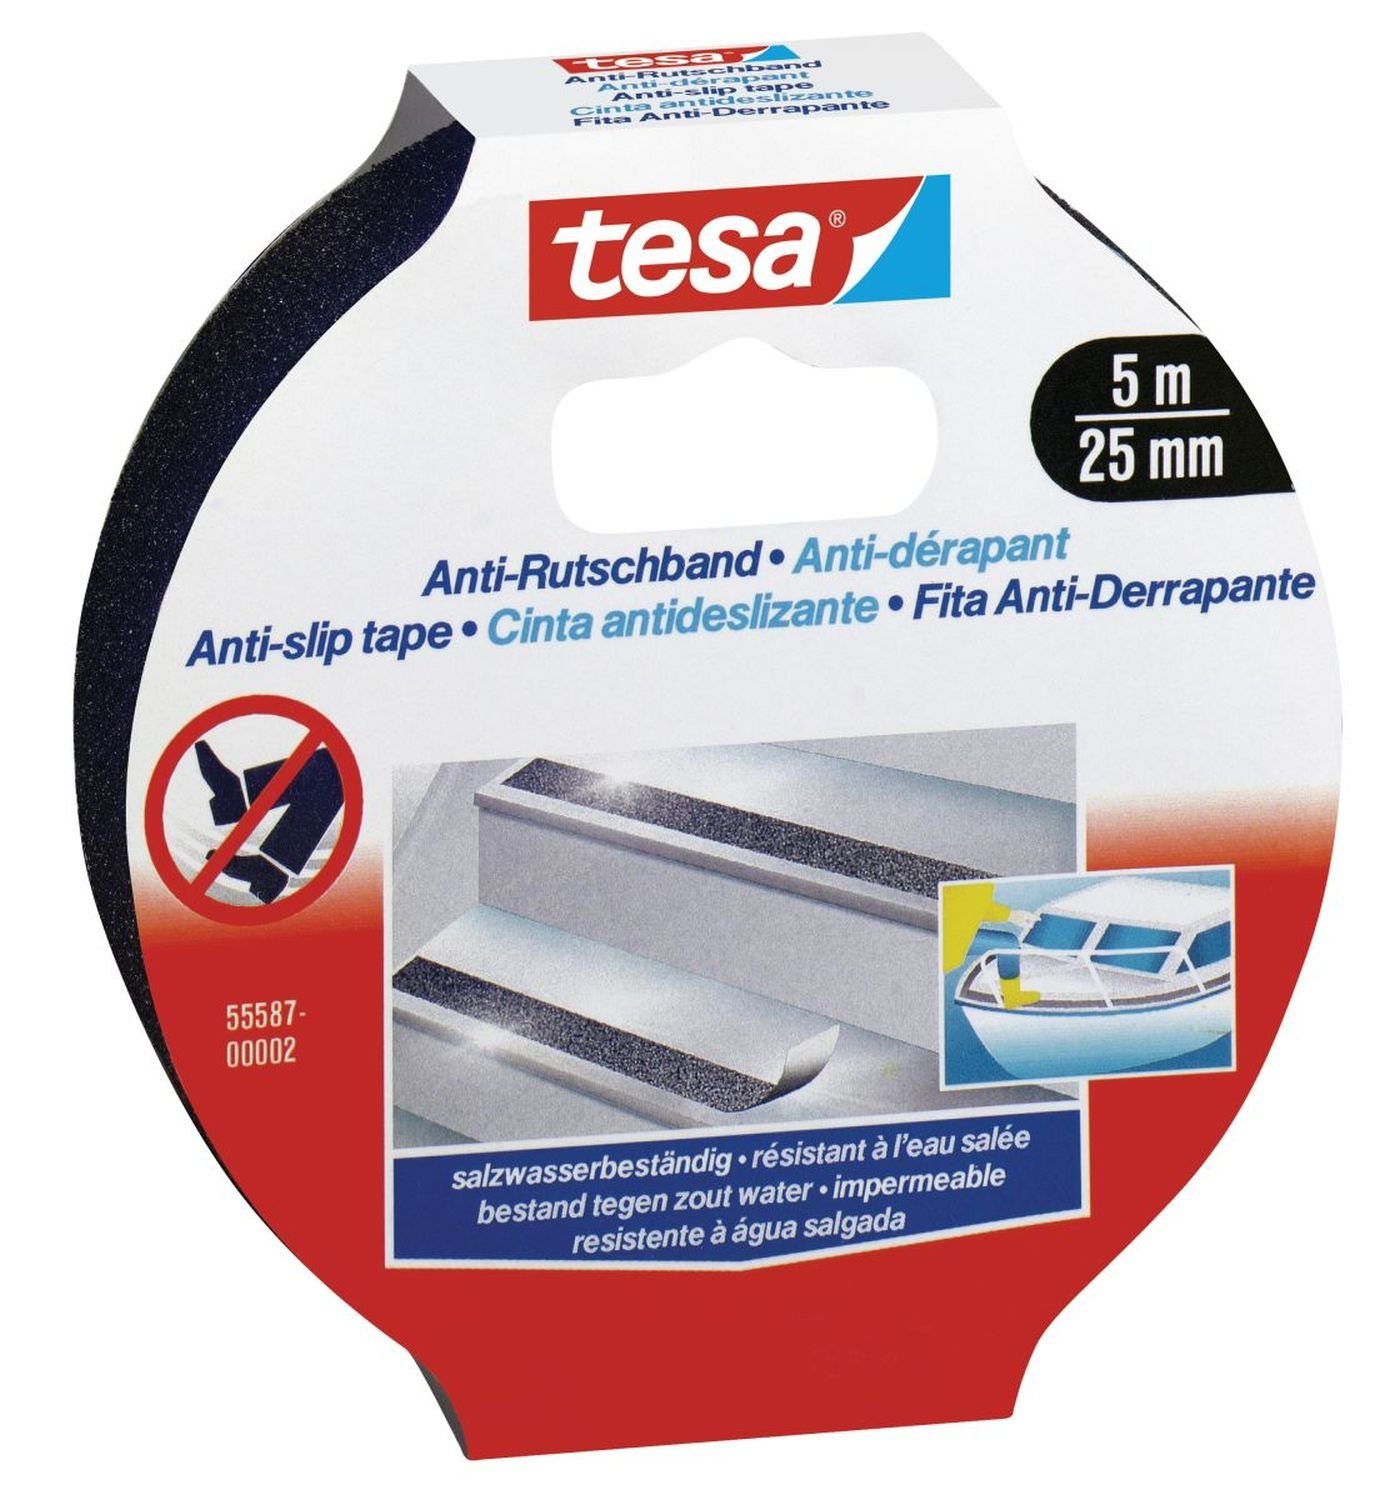 tesa Anti-Rutschband 5m 25mm schwarz Handscanner